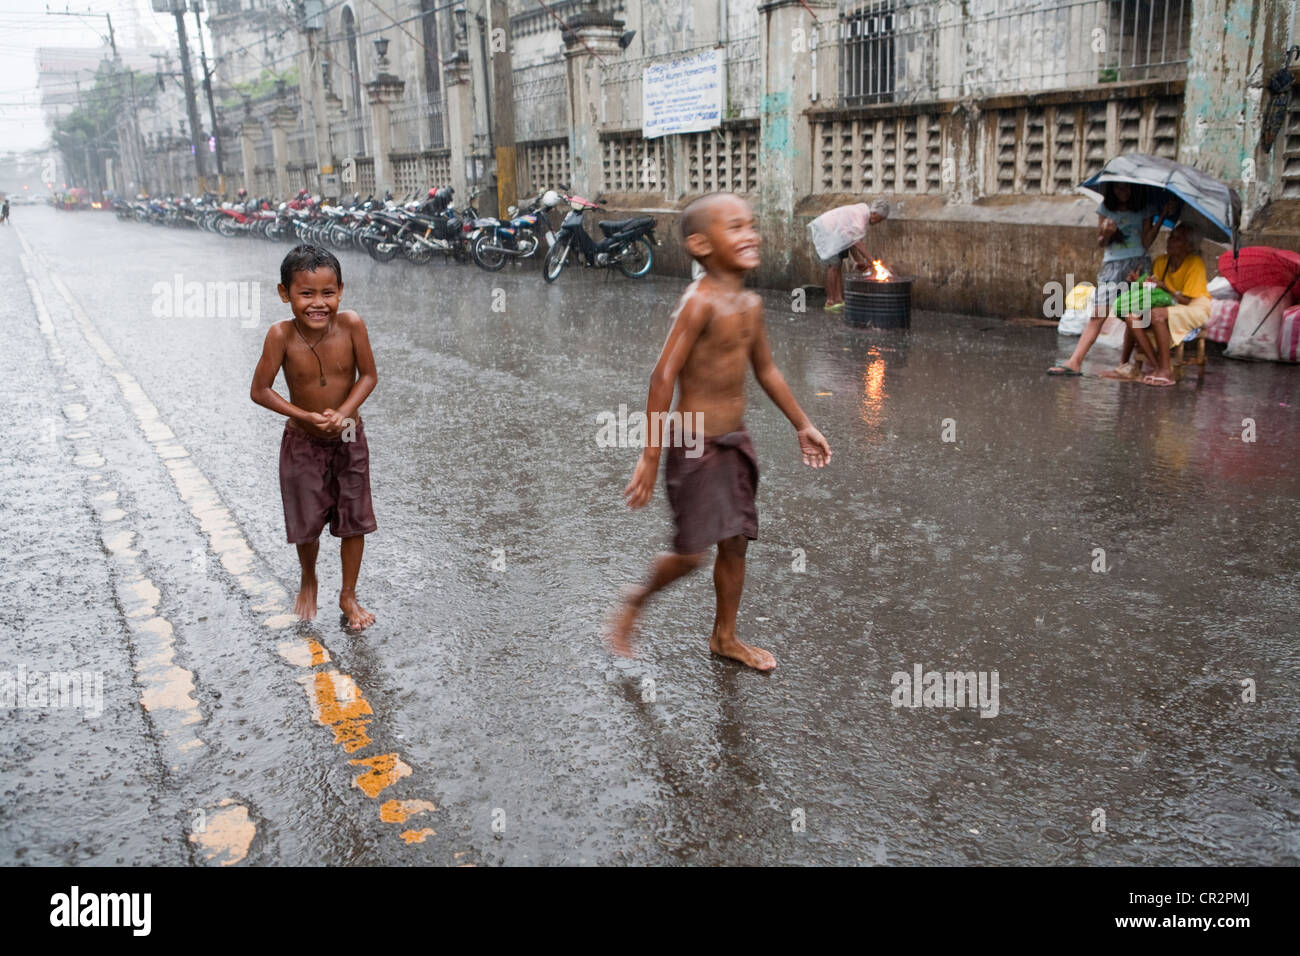 La ville de Cebu, aux Philippines, 11.mars 2012 Philippines : les enfants s'amuser pendant une averse comme la saison des pluies tire à sa fin. Banque D'Images